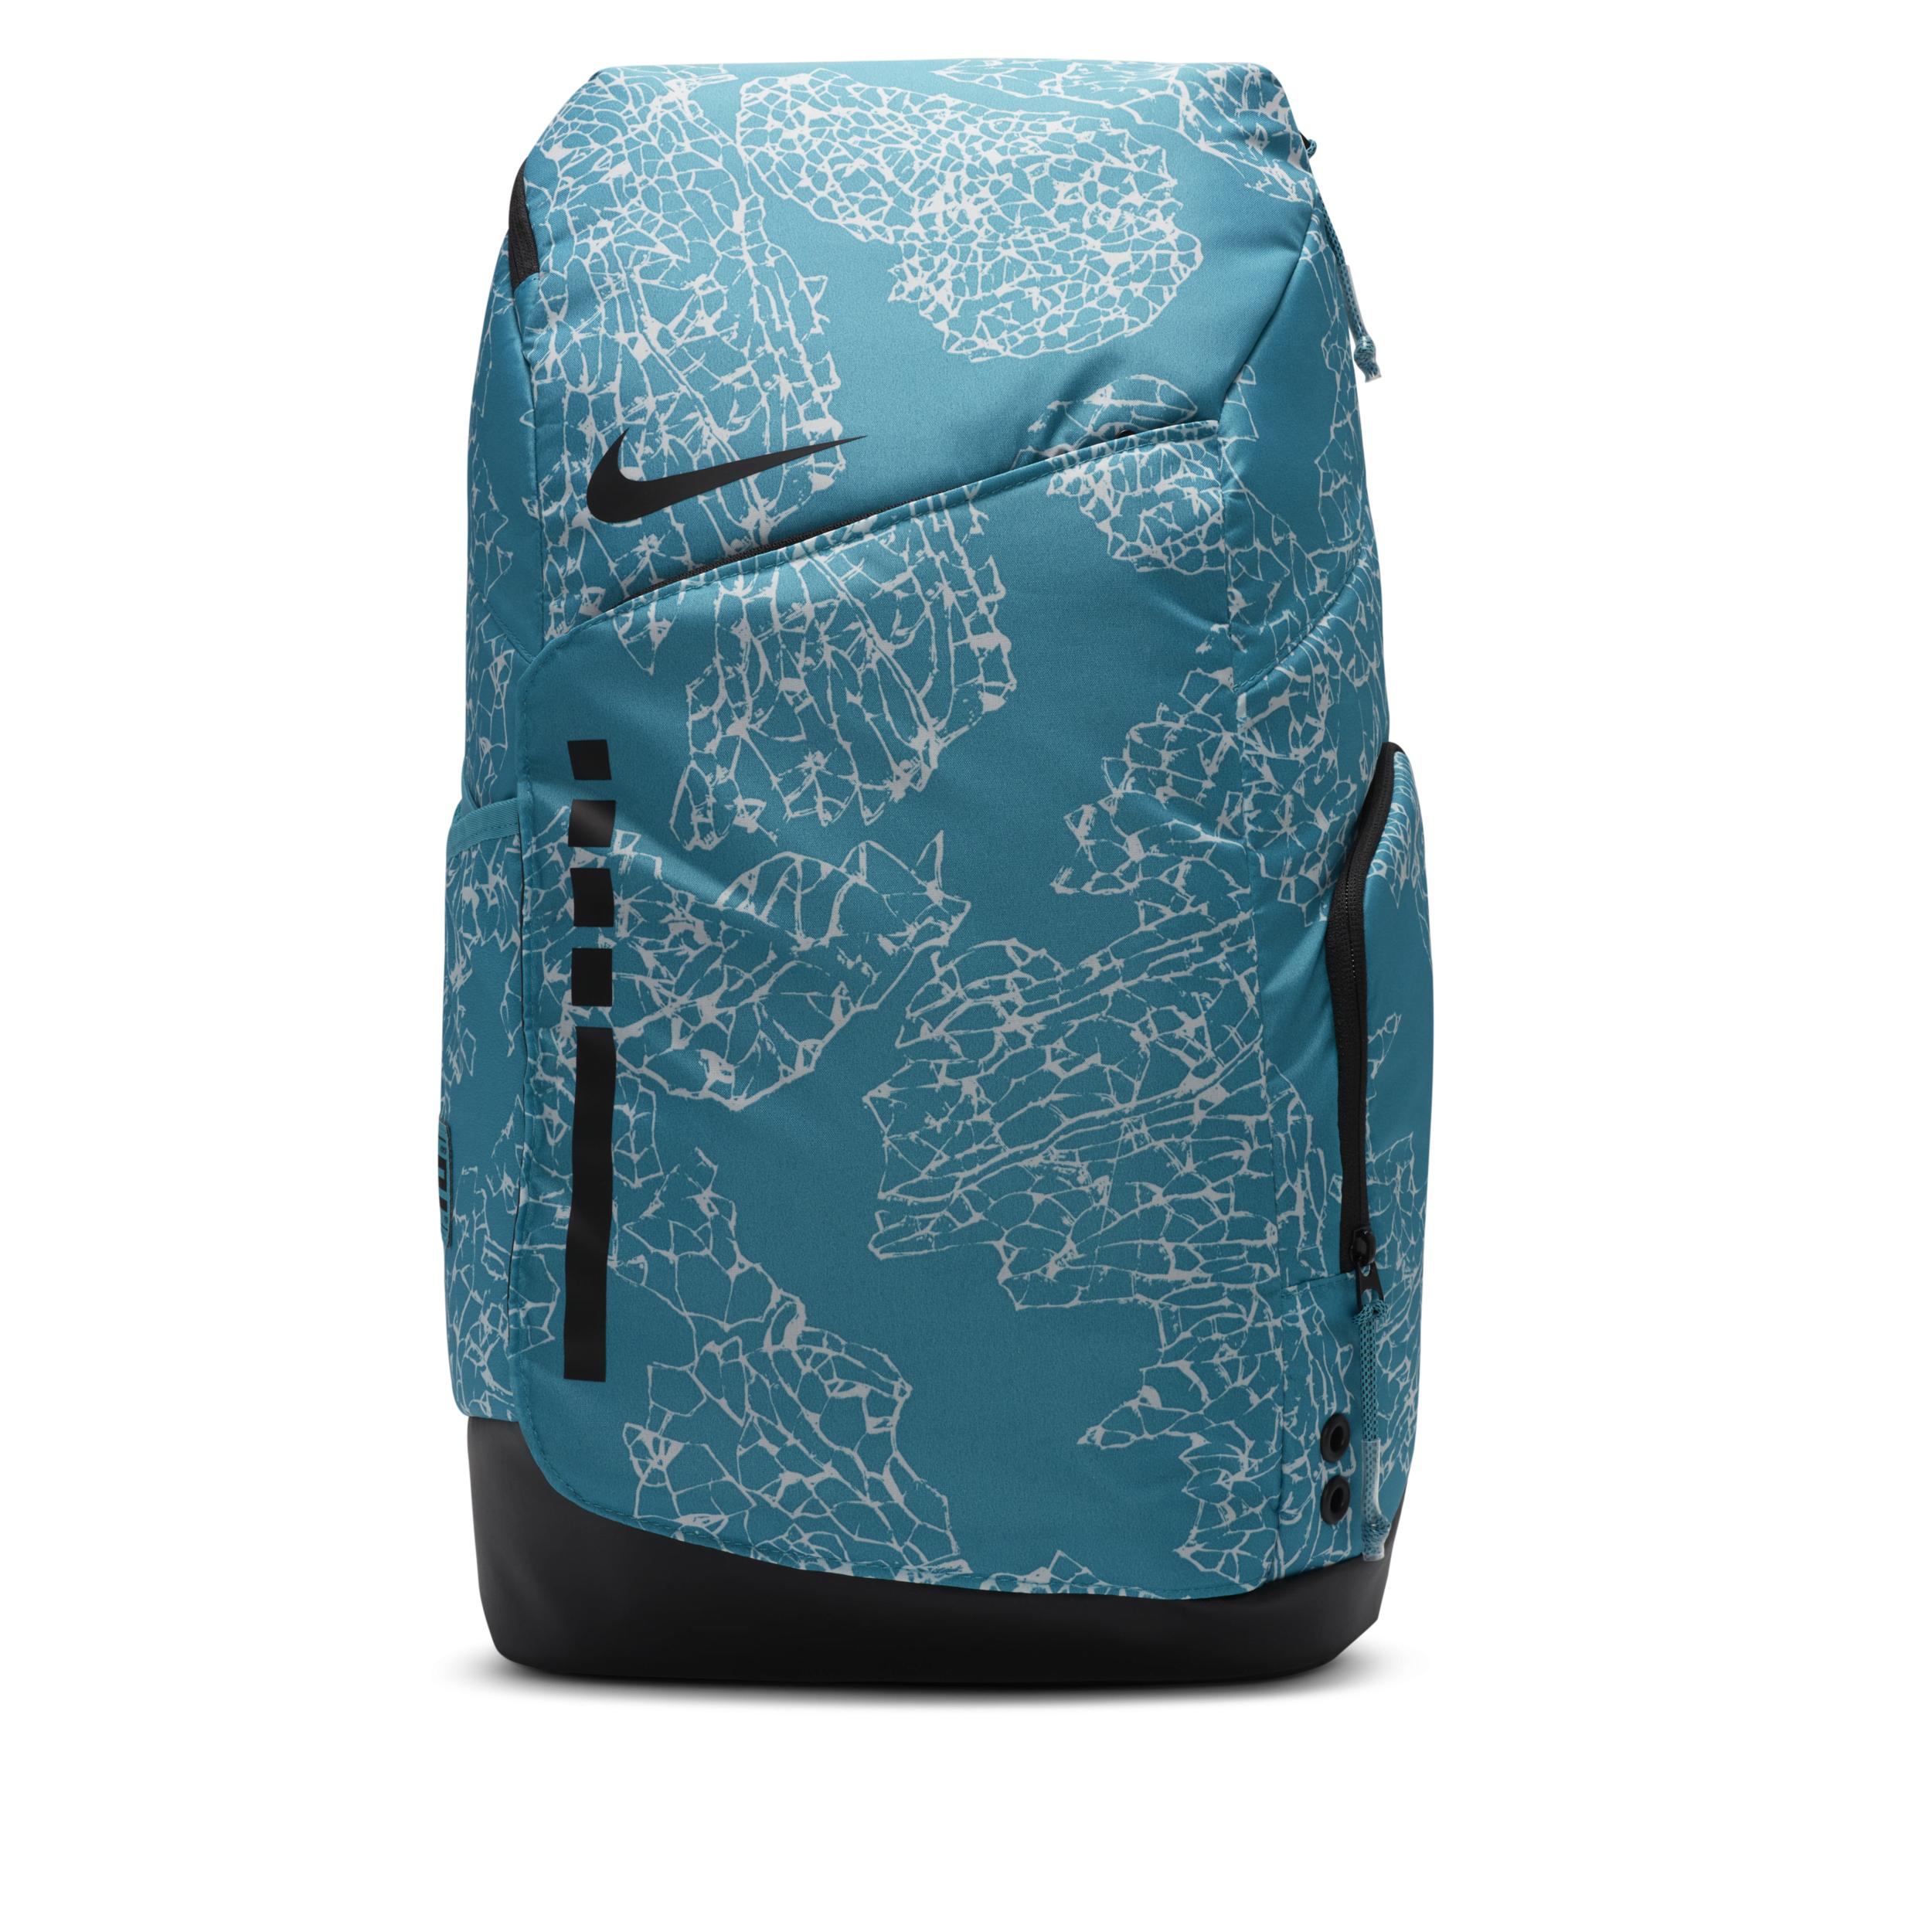 Nike Brasilia Just do it Big Backpack Blue Student large Gym Sport Bag New  | eBay